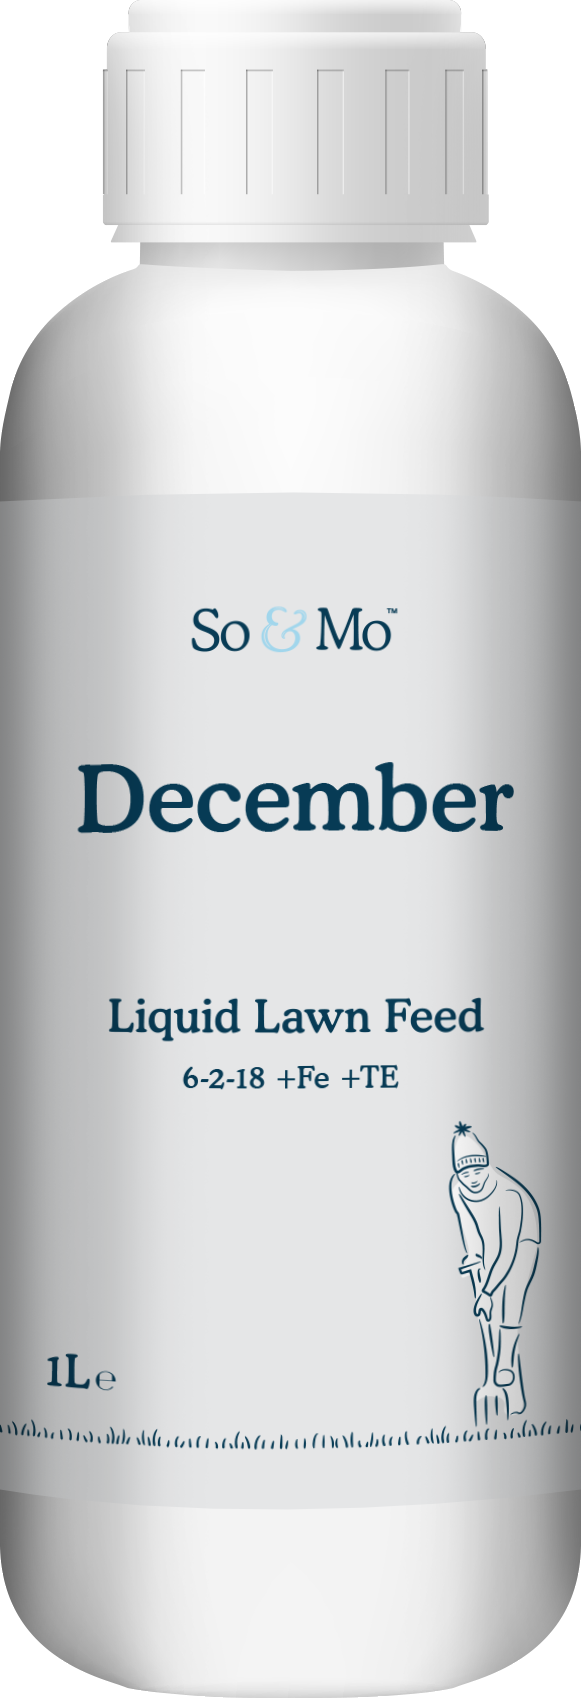 December Liquid Lawn Feed Bottle